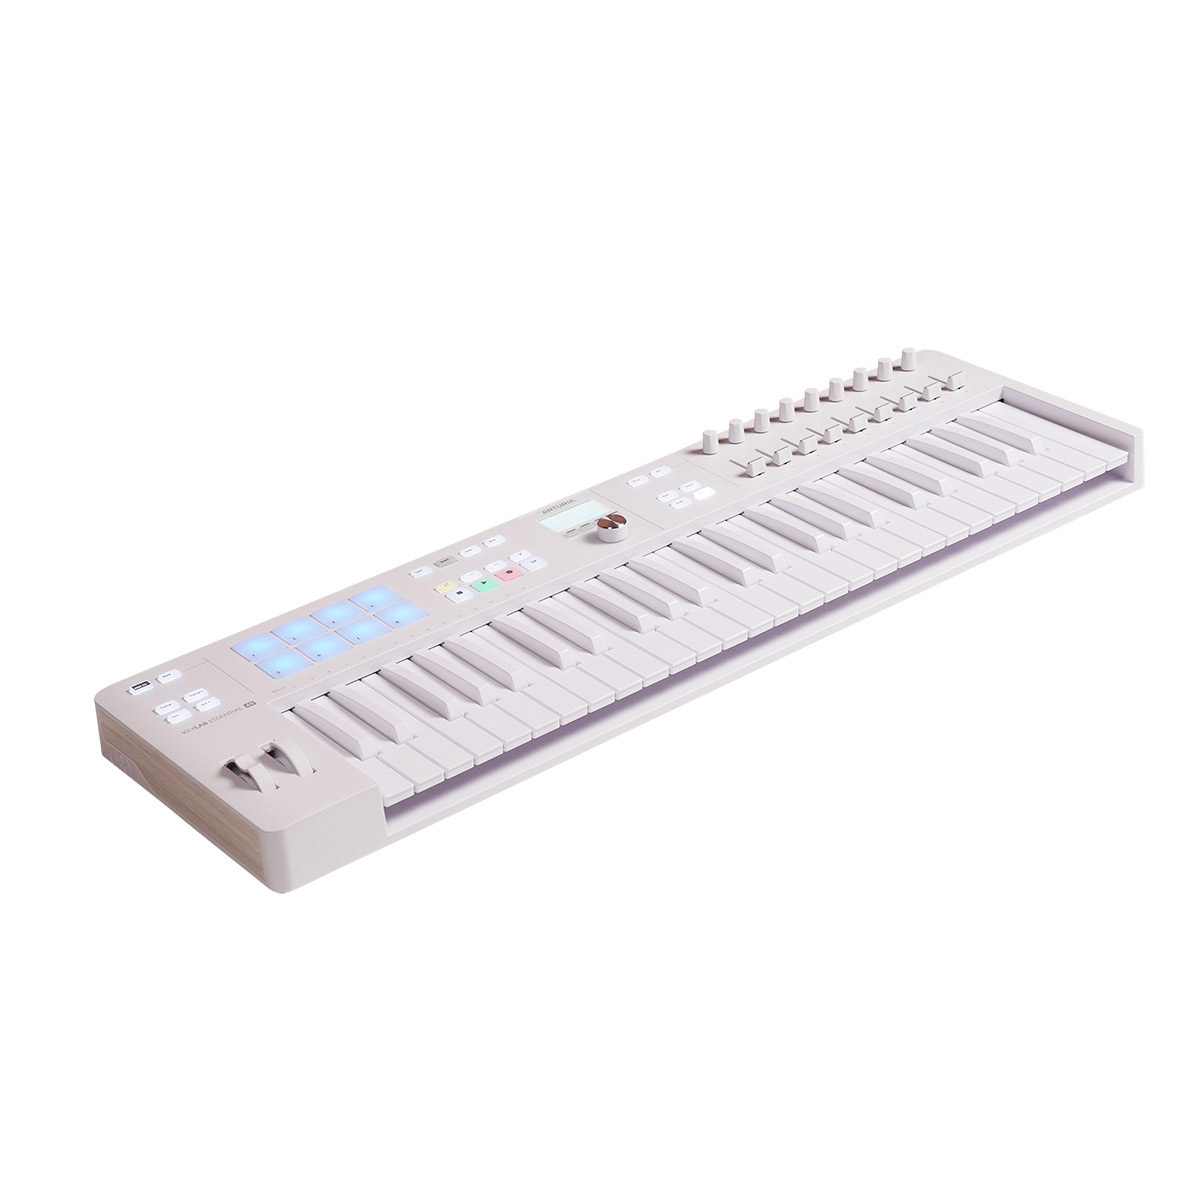 ARTURIAa- Tria KeyLab Essential 61 MK3 (Alpine White) 61 keyboard limitation color MIDI keyboard controller USB